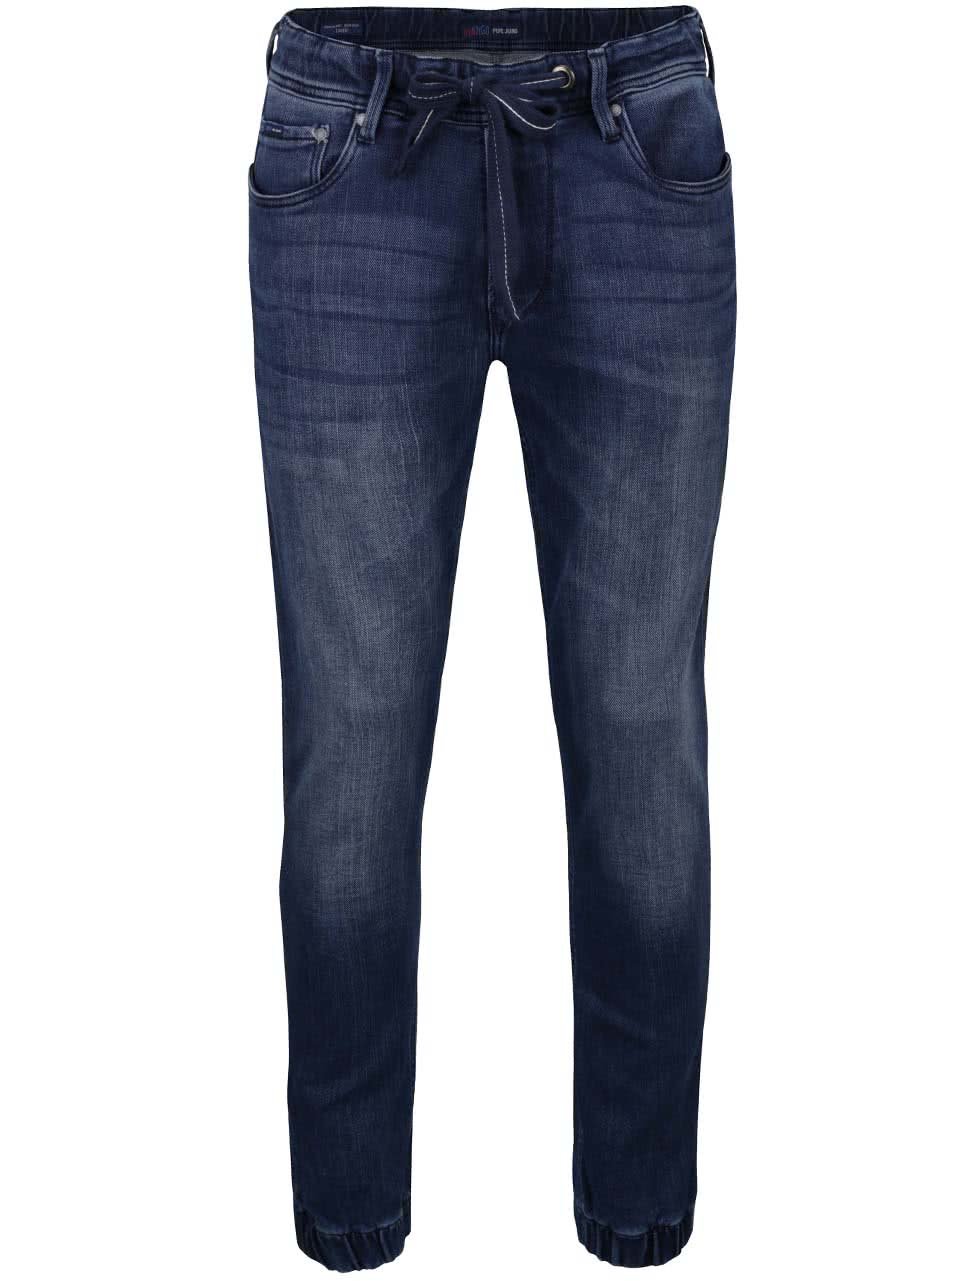 Tmavě modré pánské džíny se stahovací šňůrkou v pase Pepe Jeans Sprint